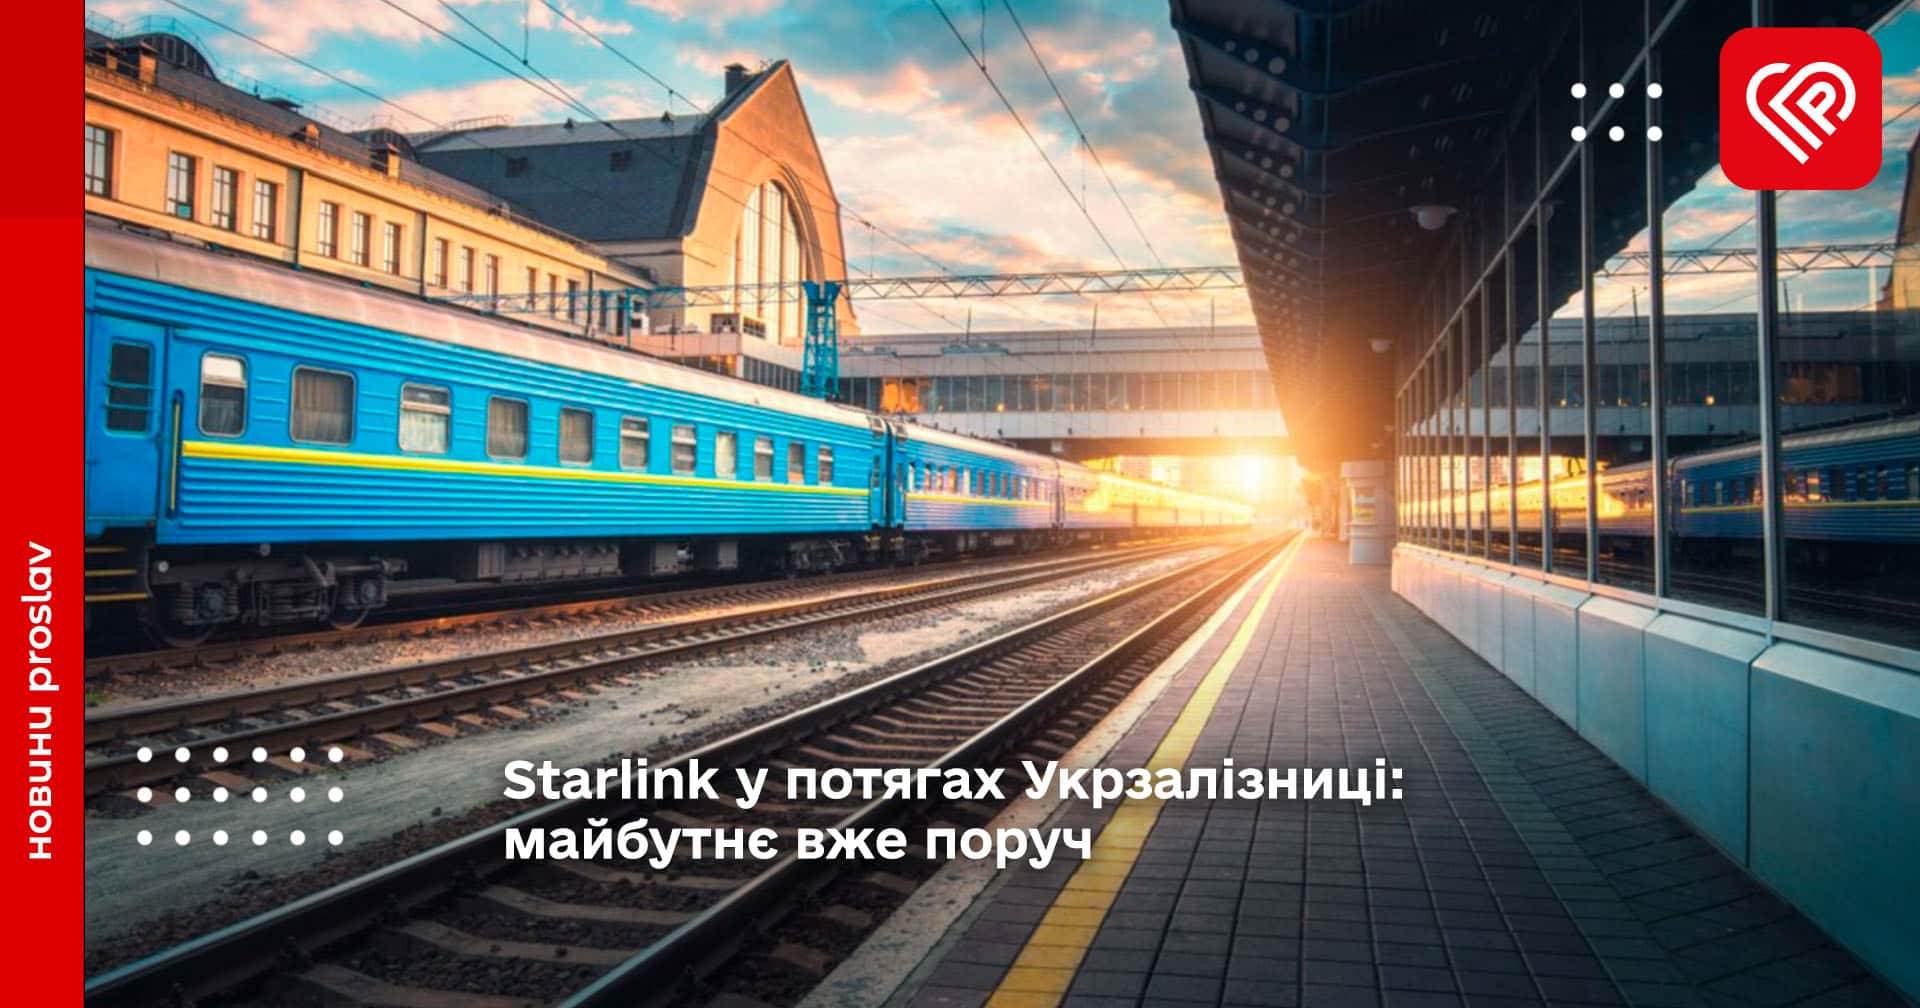 Укрзалізниця протестувала проект встановлення обладнання Starlink у своїх поїздах